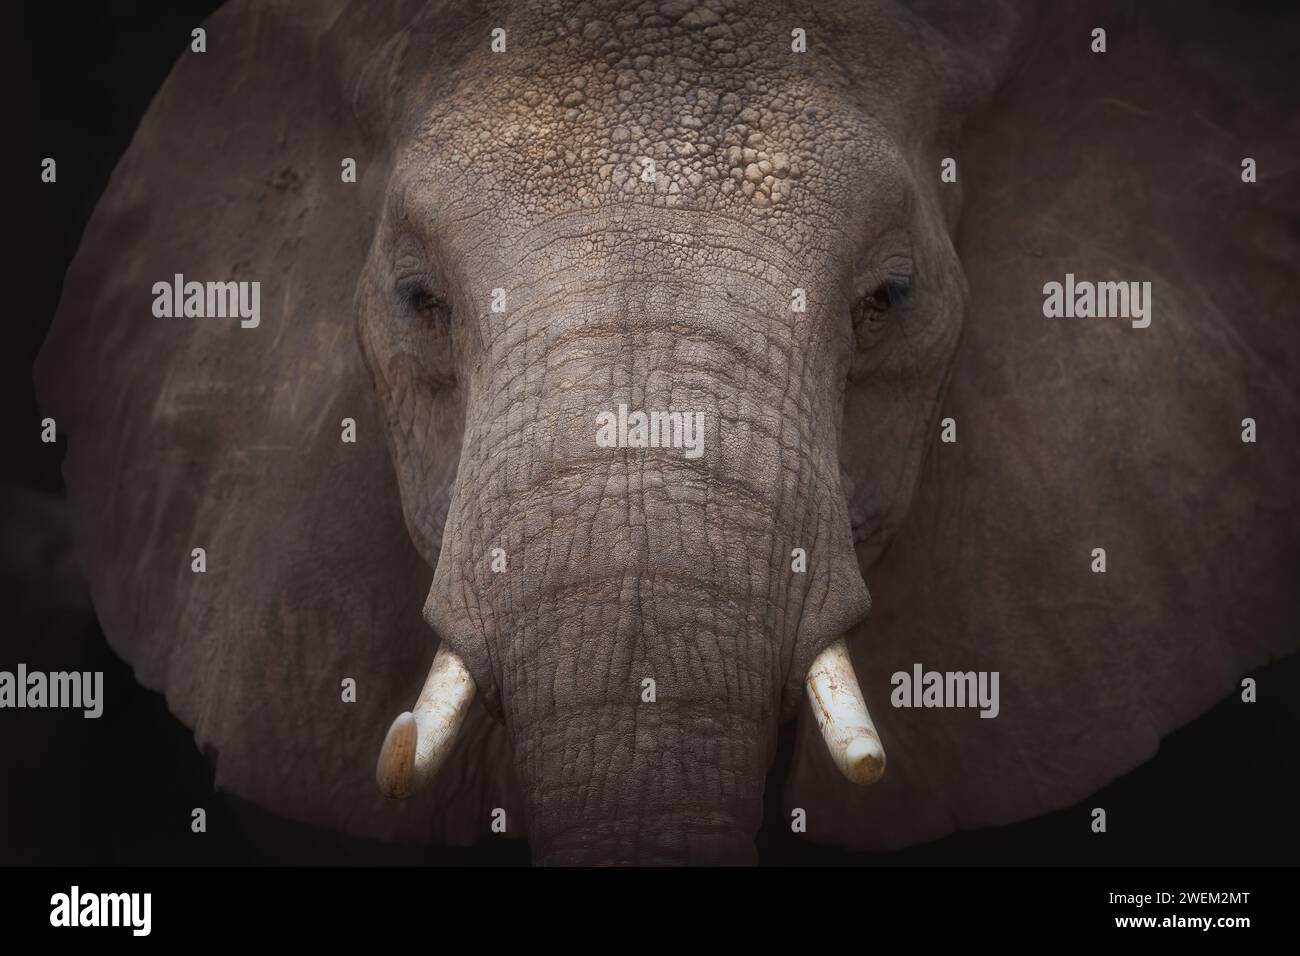 Portrait d'un éléphant d'Afrique. Gros plan Banque D'Images